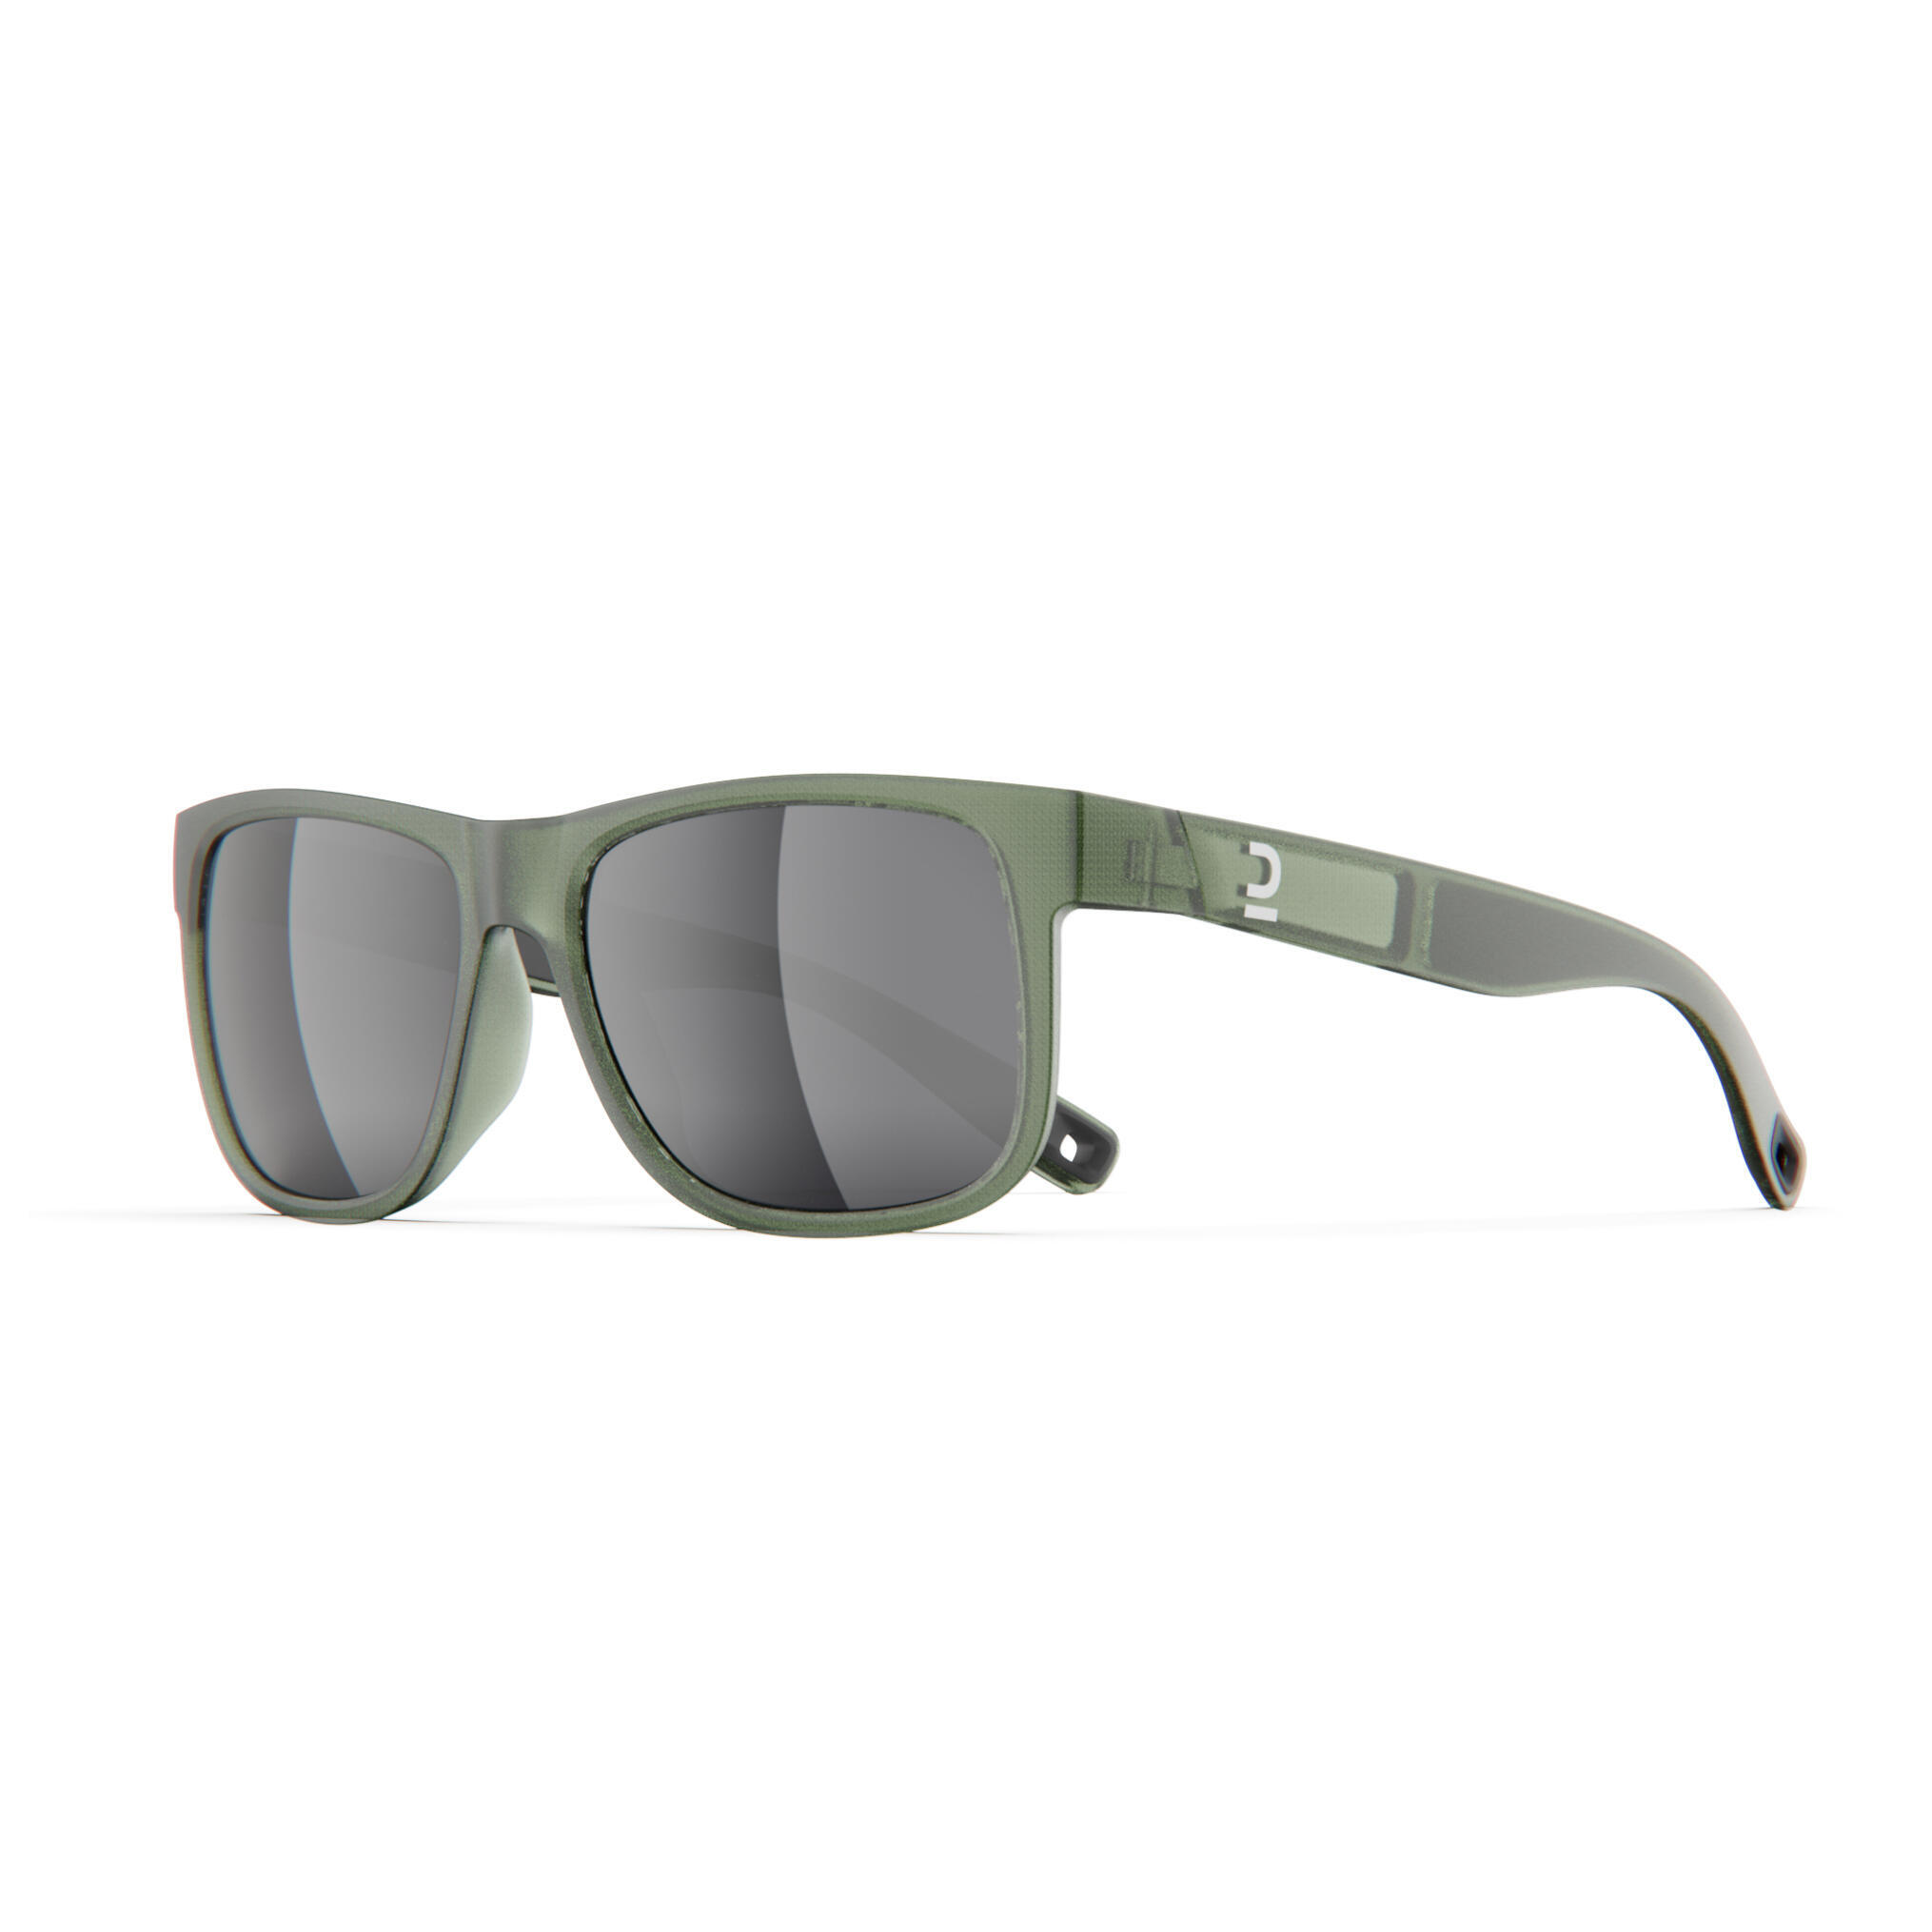 солнцезащитные очки 71 зеленый Очки солнцезащитные Quechua MH530 для походов, категории 3, хаки / серебристый / лаврово-зеленый